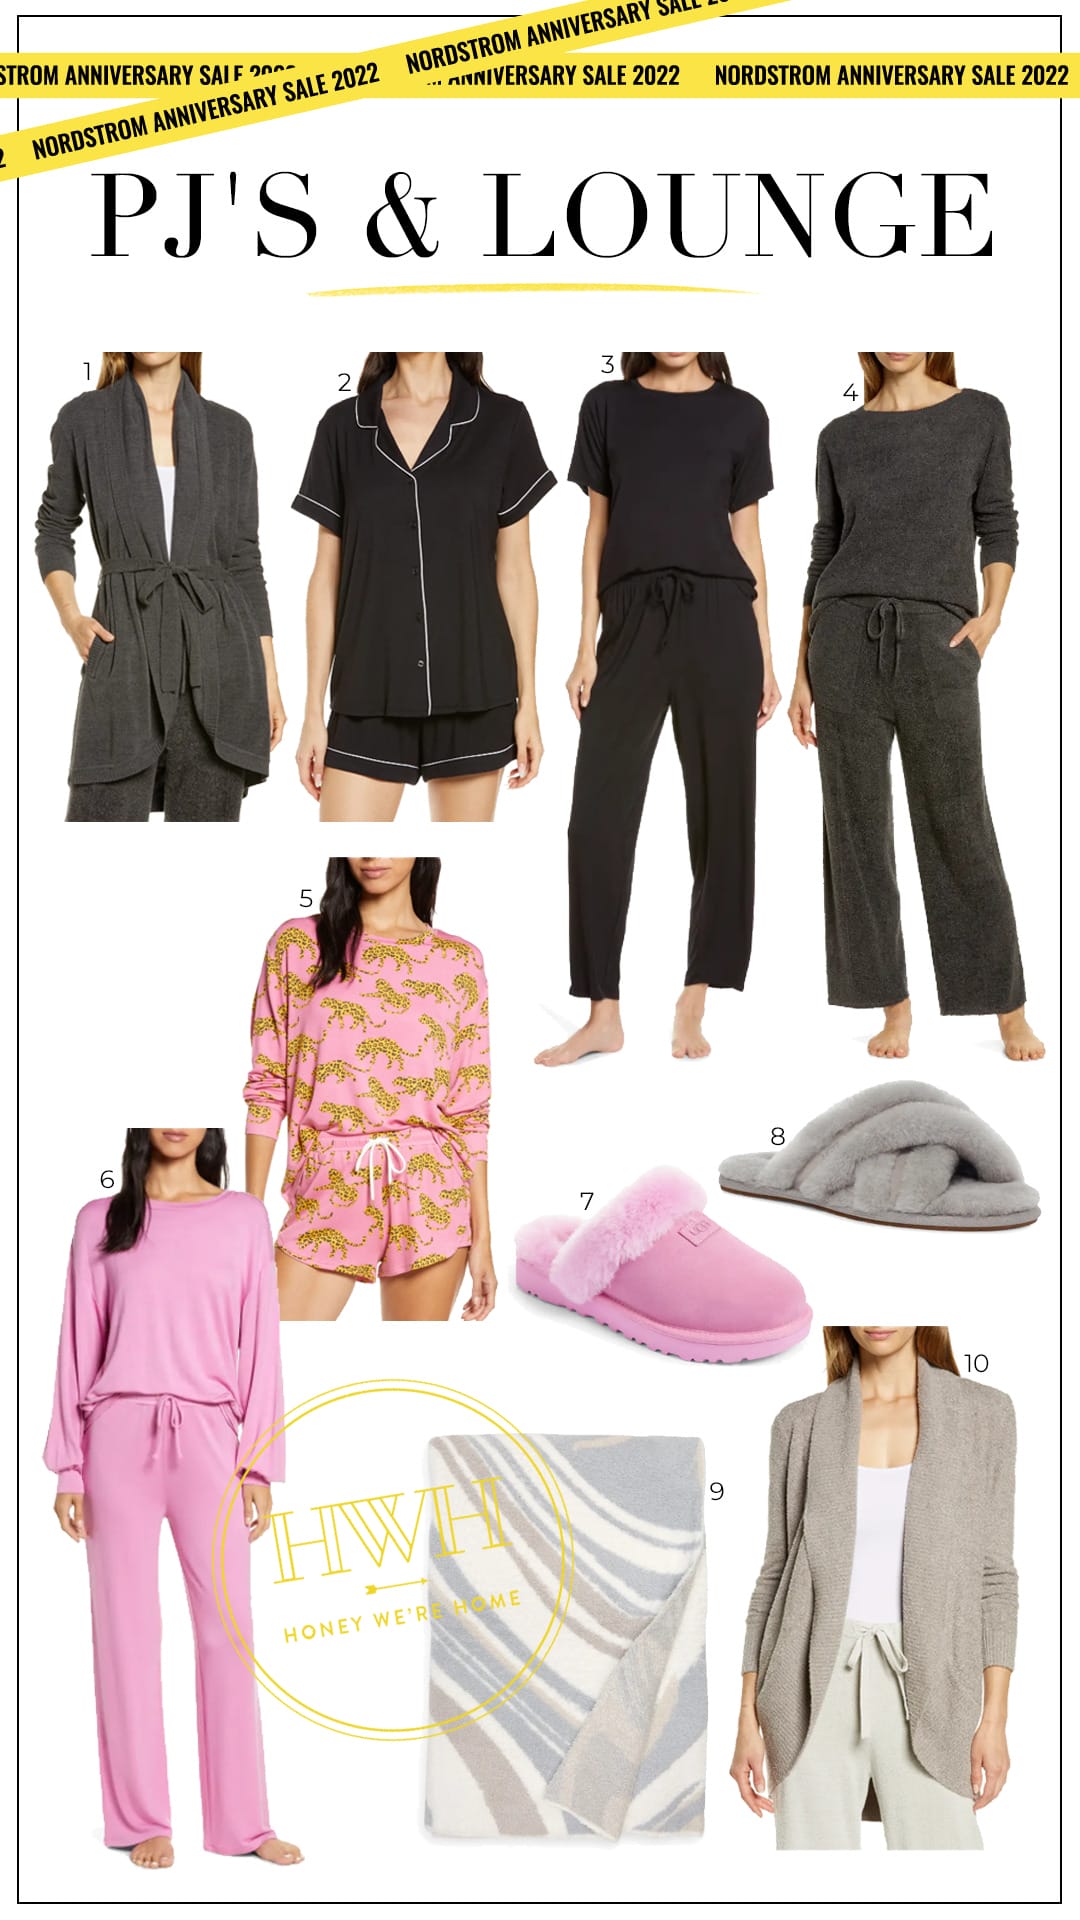 Nordstrom Anniversary Sale Pajamas & Loungewear